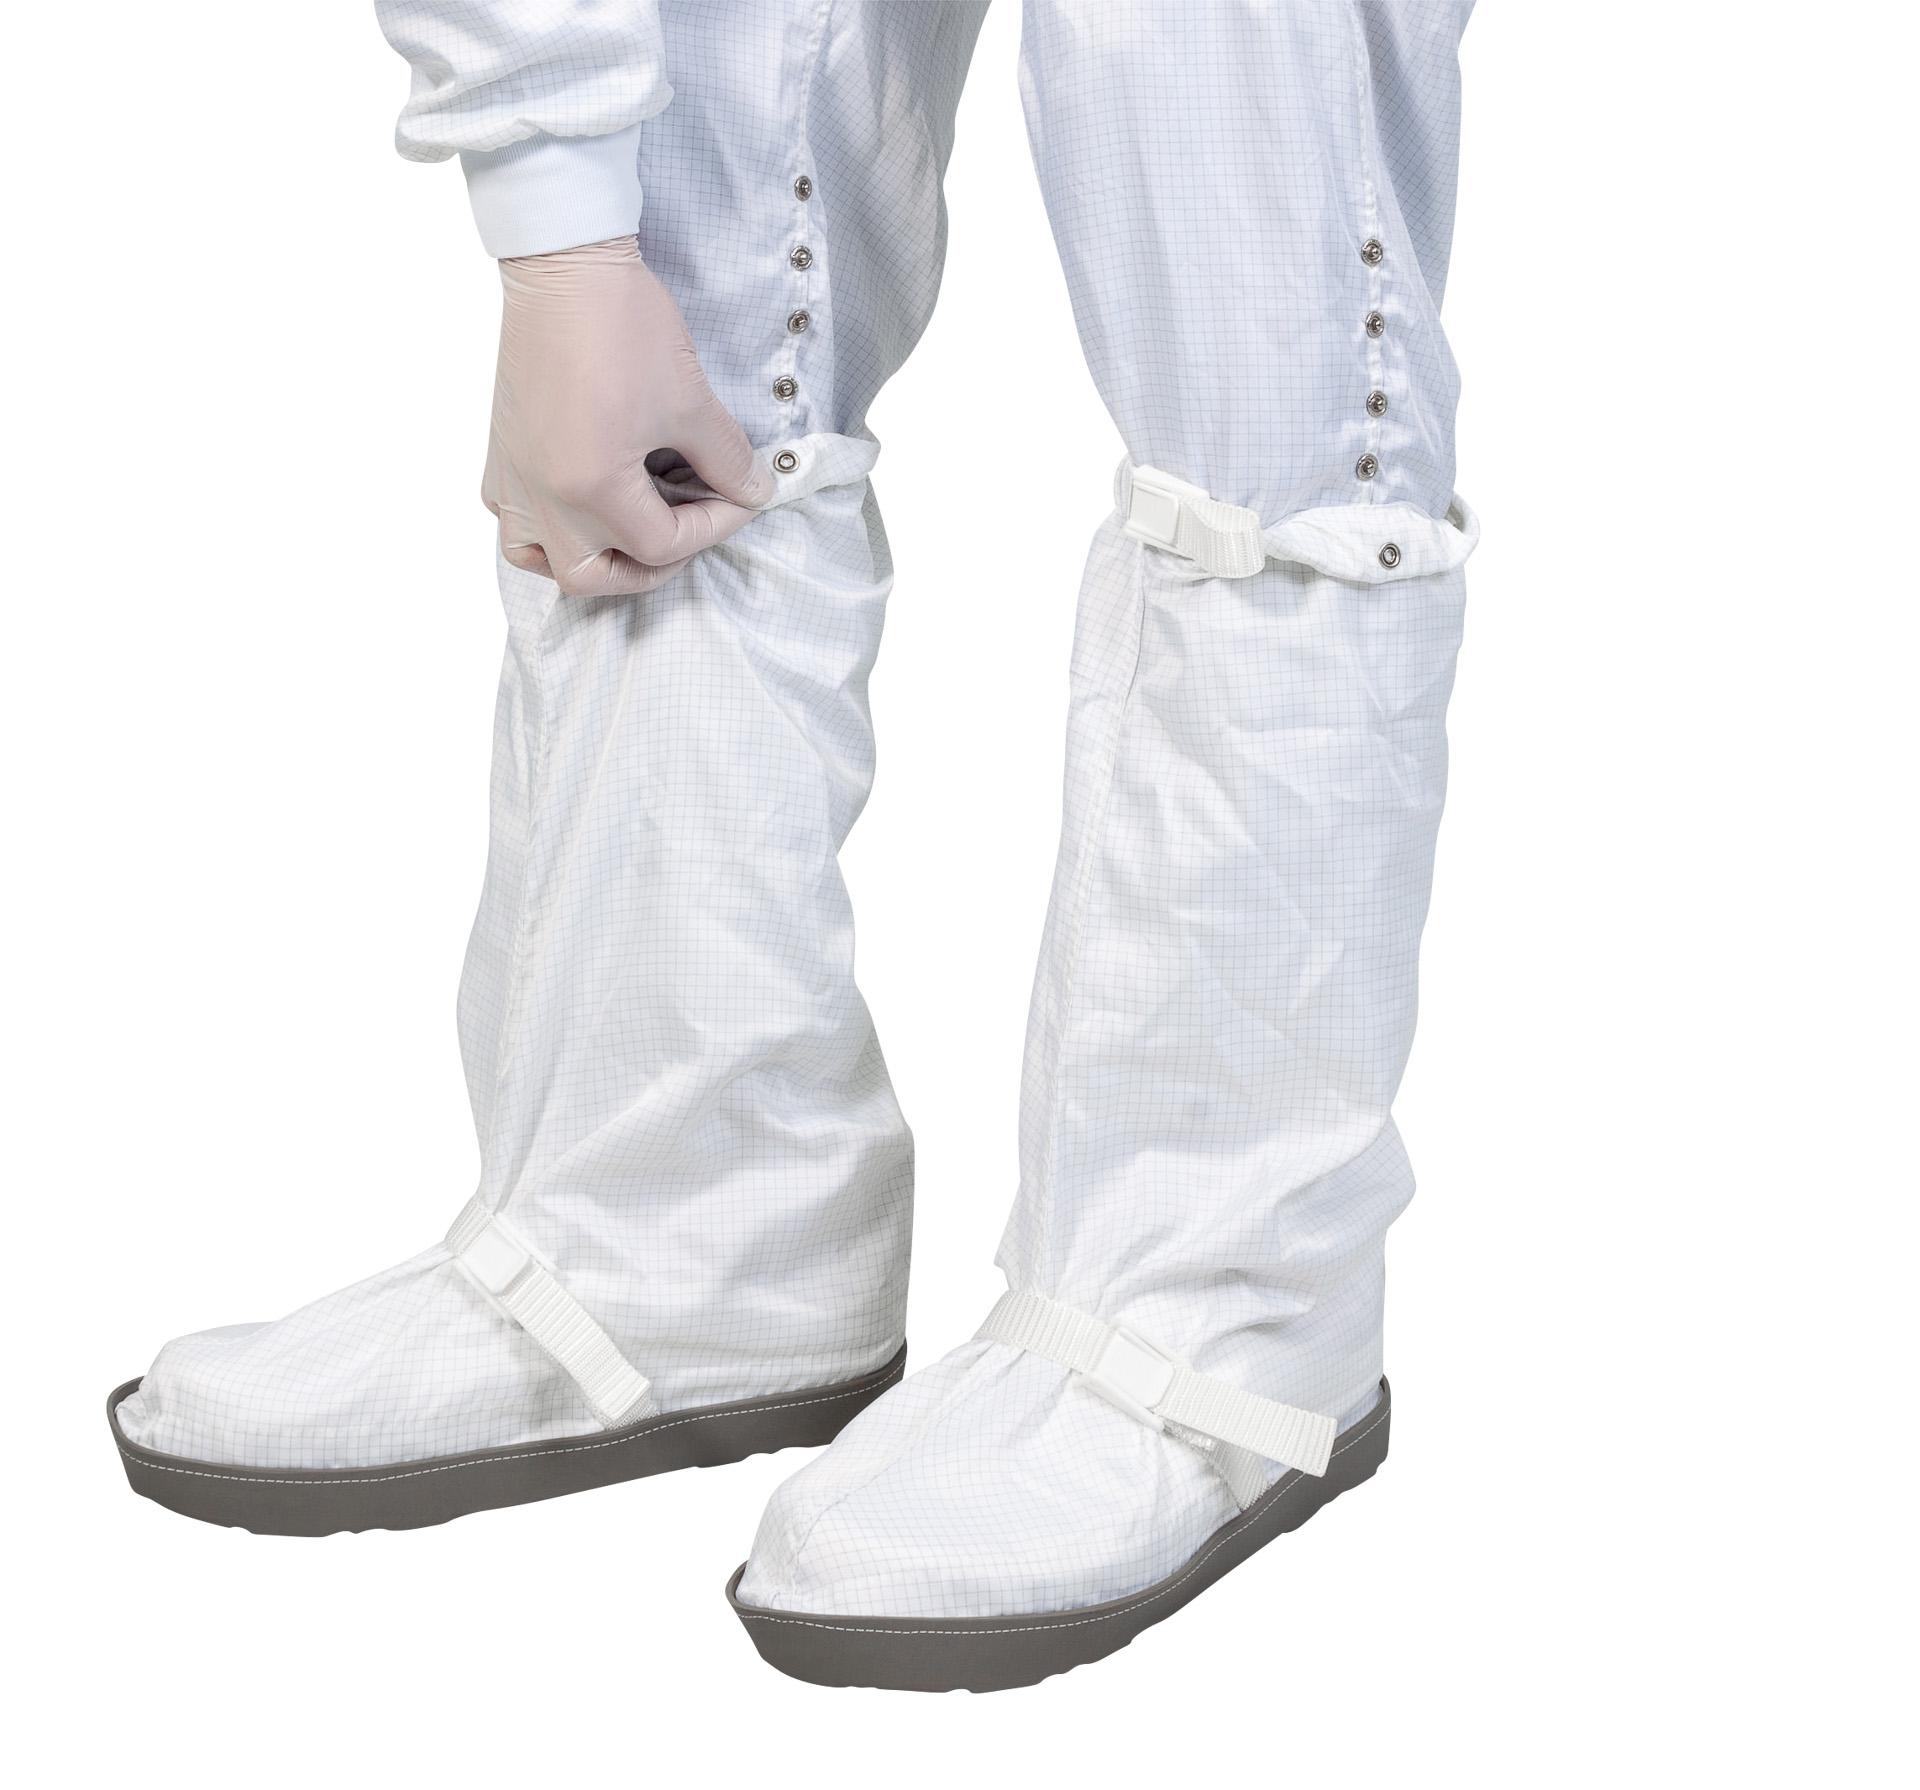 Couvre-botte réutilisable pour salle blanche avec semelle en caoutchouc antistatique, pour classe de salle blanche ISO 4-8, GMP A-C